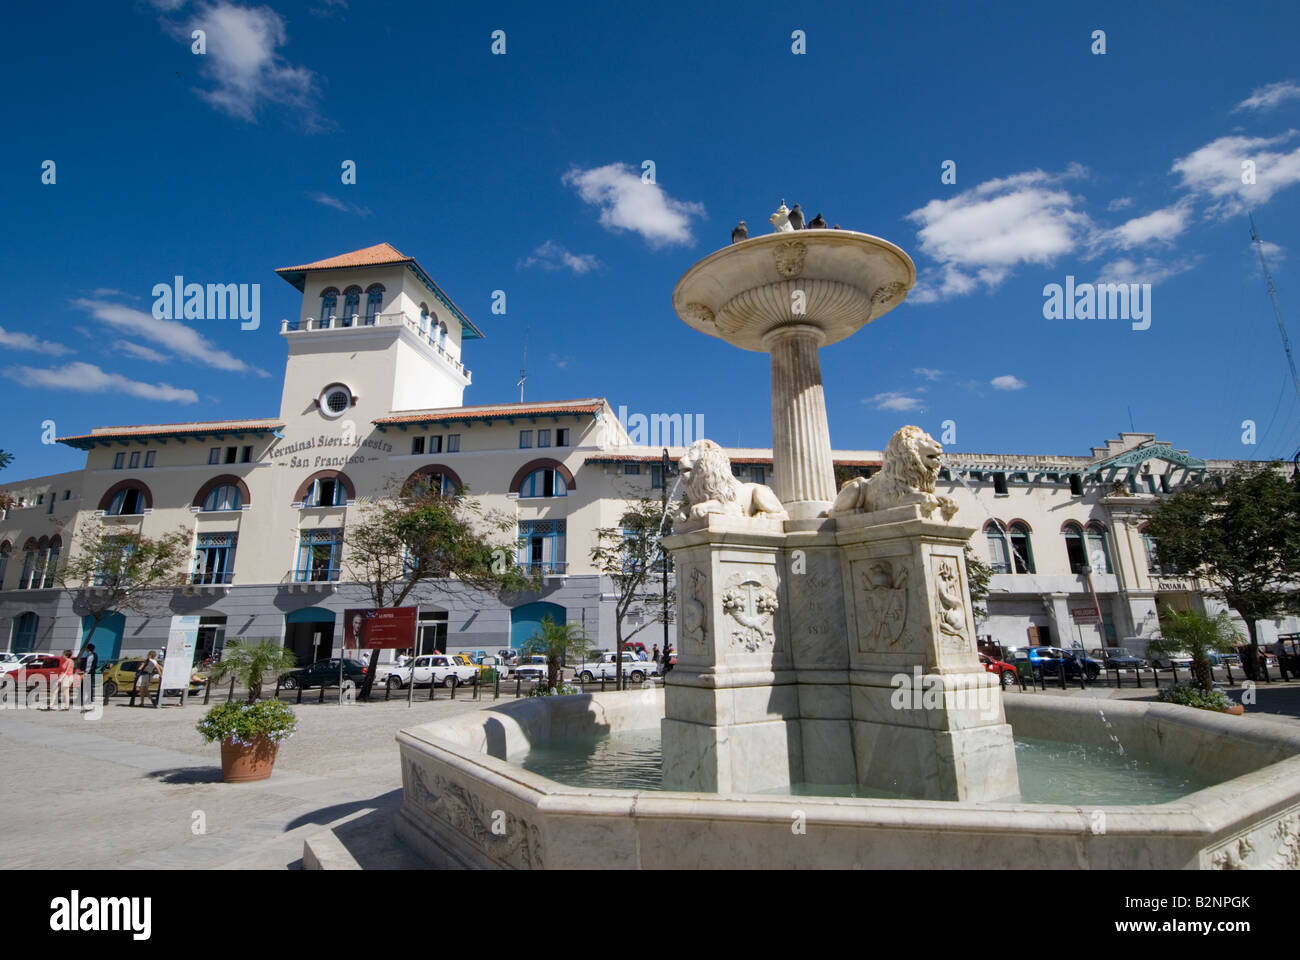 Frisch renoviertes Terminal "Sierra Maestra" gesehen von Plaza de San Francisco Habana Vieja Havanna Stockfoto